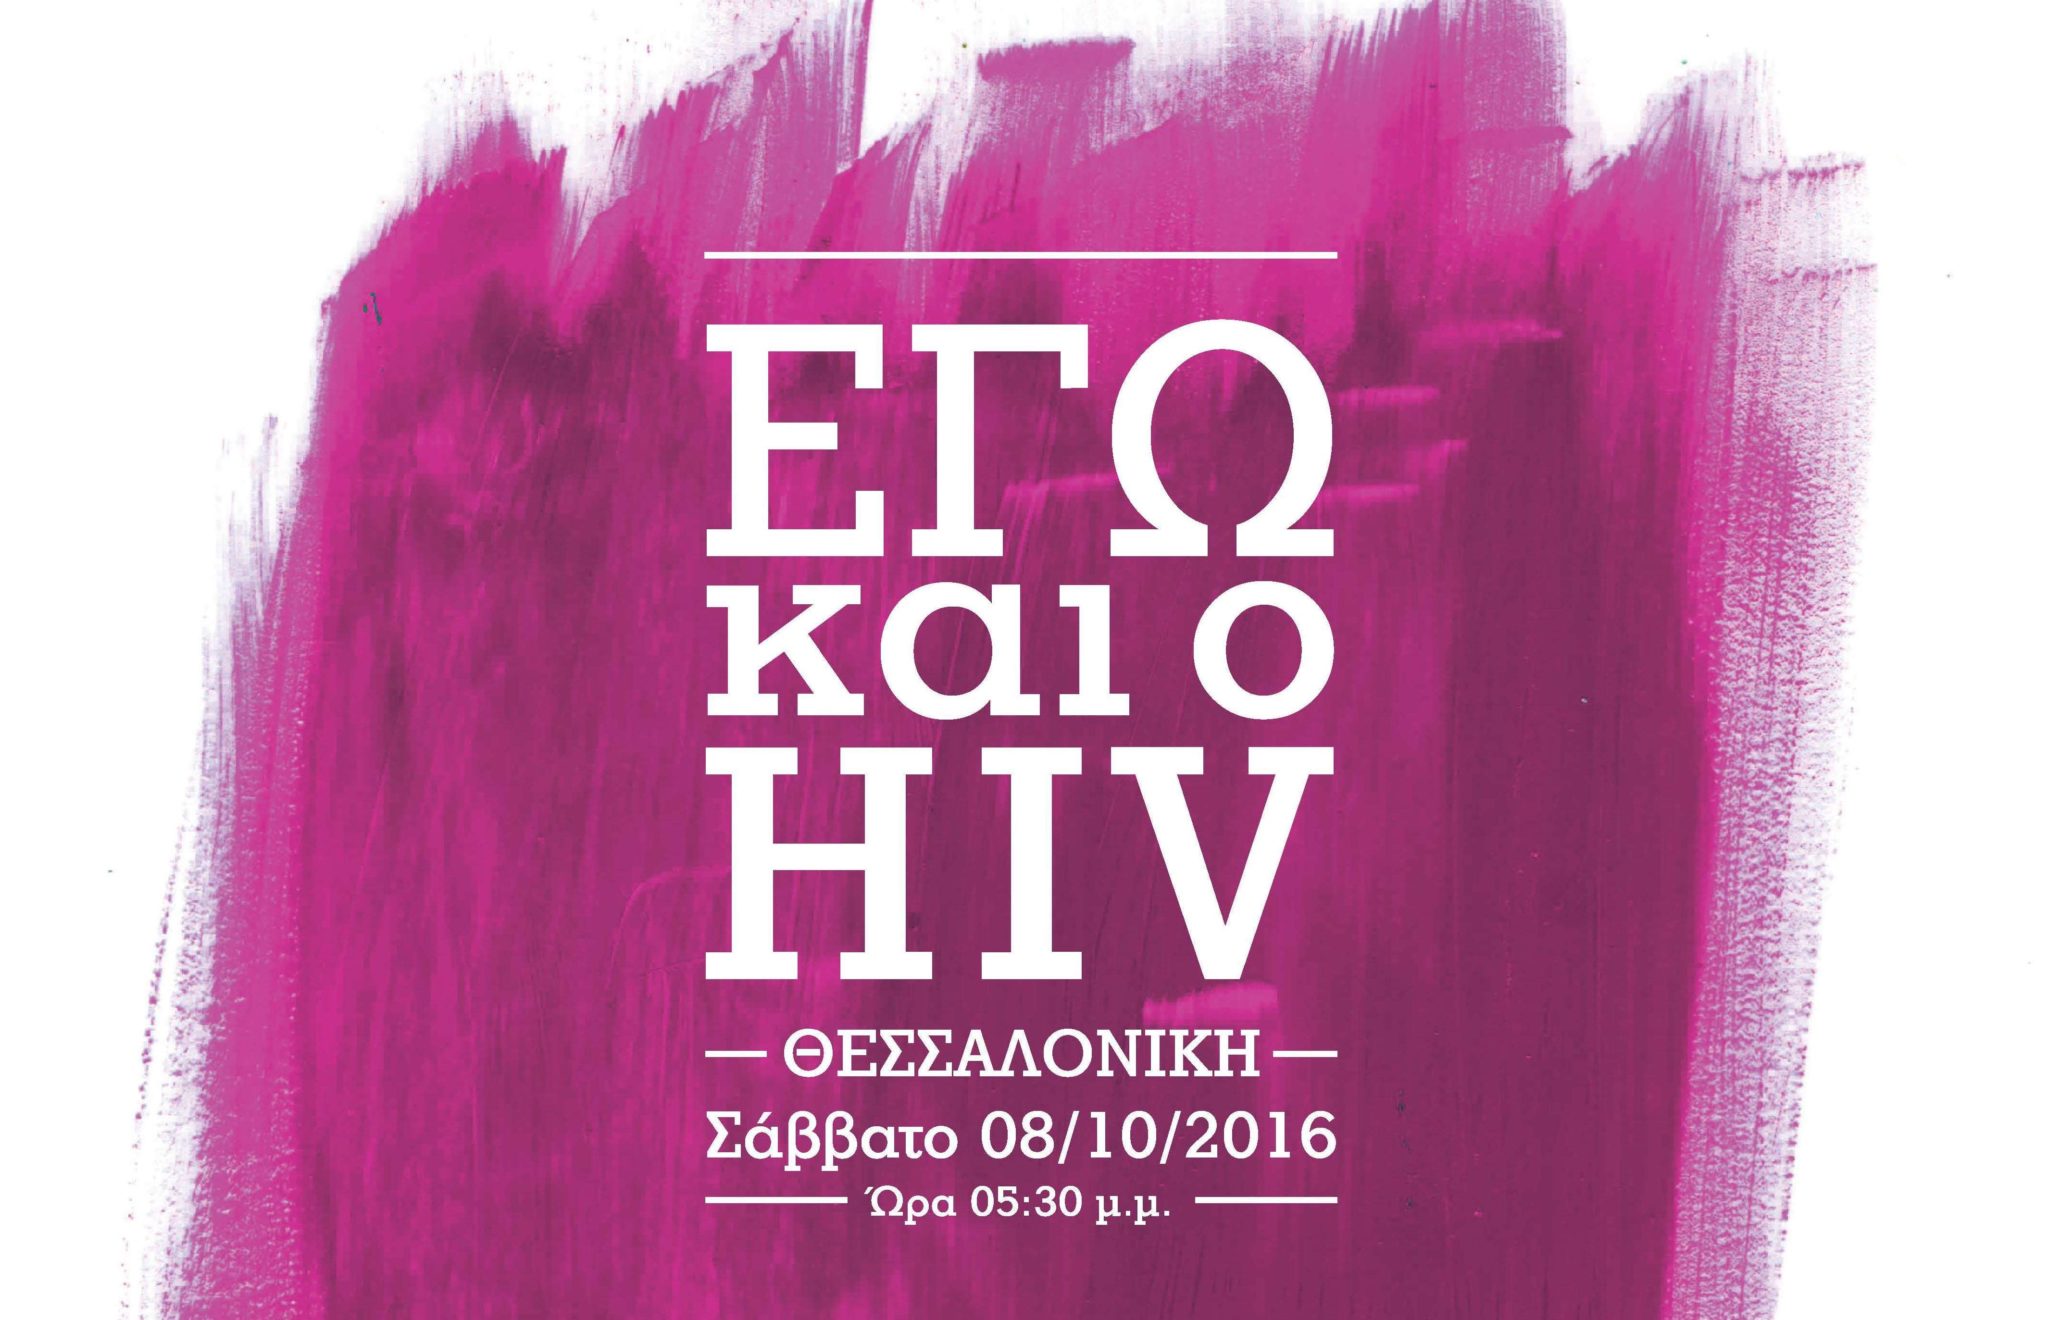 Εικόνα για το άρθρο ““ΕΓΩ ΚΑΙ Ο HIV” ΣΤΗ ΘΕΣΣΑΛΟΝΙΚΗ”